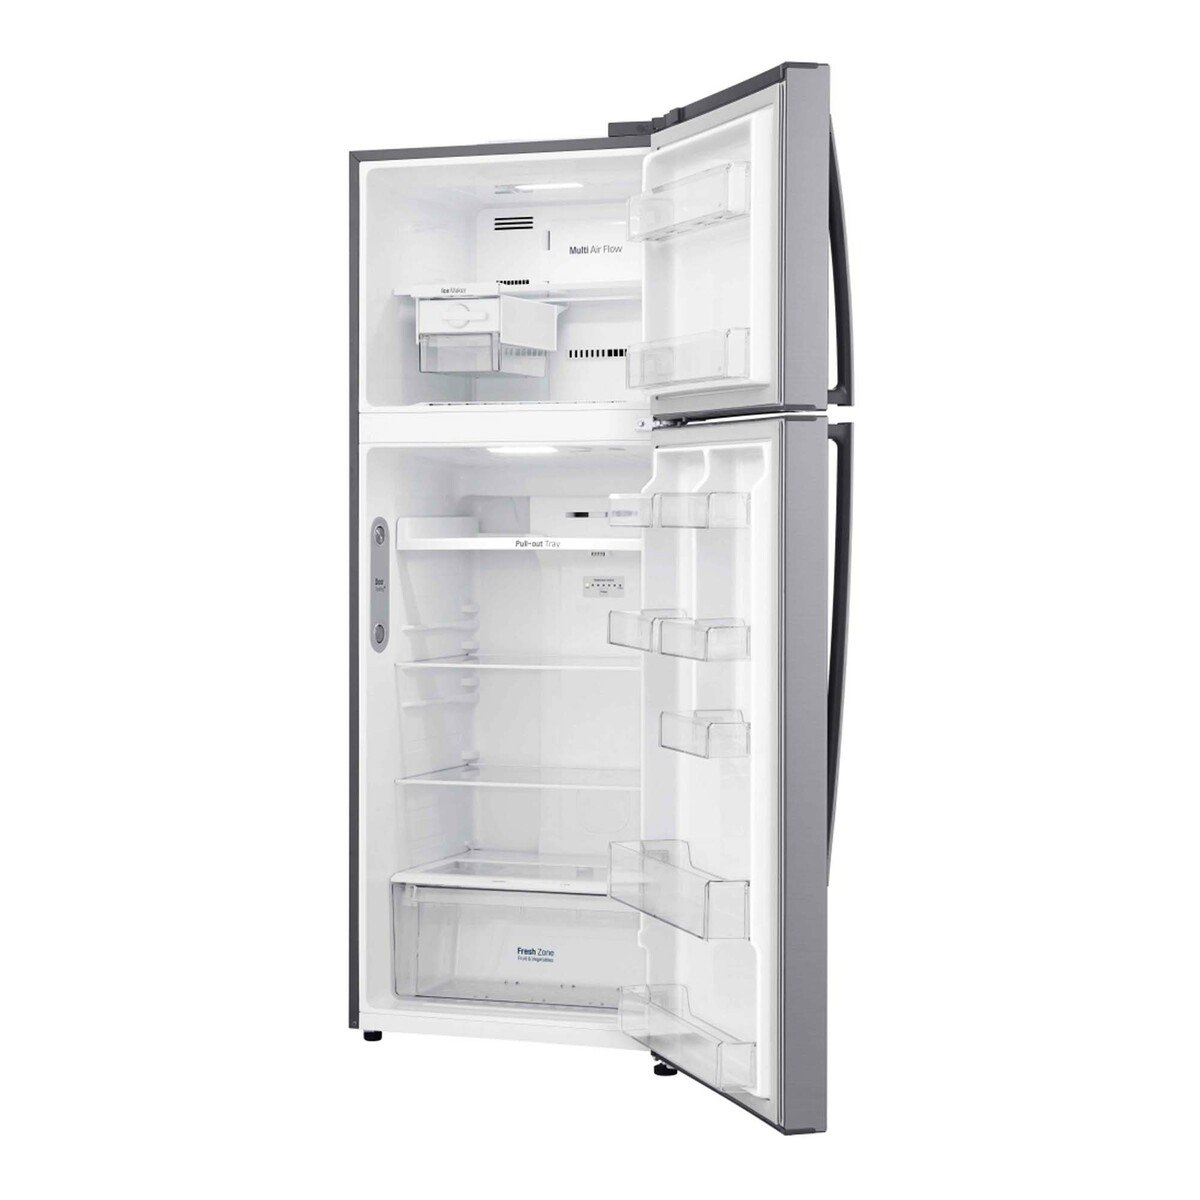 LG Double Door Refrigerator GR-C619HLCN 438LTR, Top Mount Freezer, Inverter Linear Compressor, Multi Air Flow